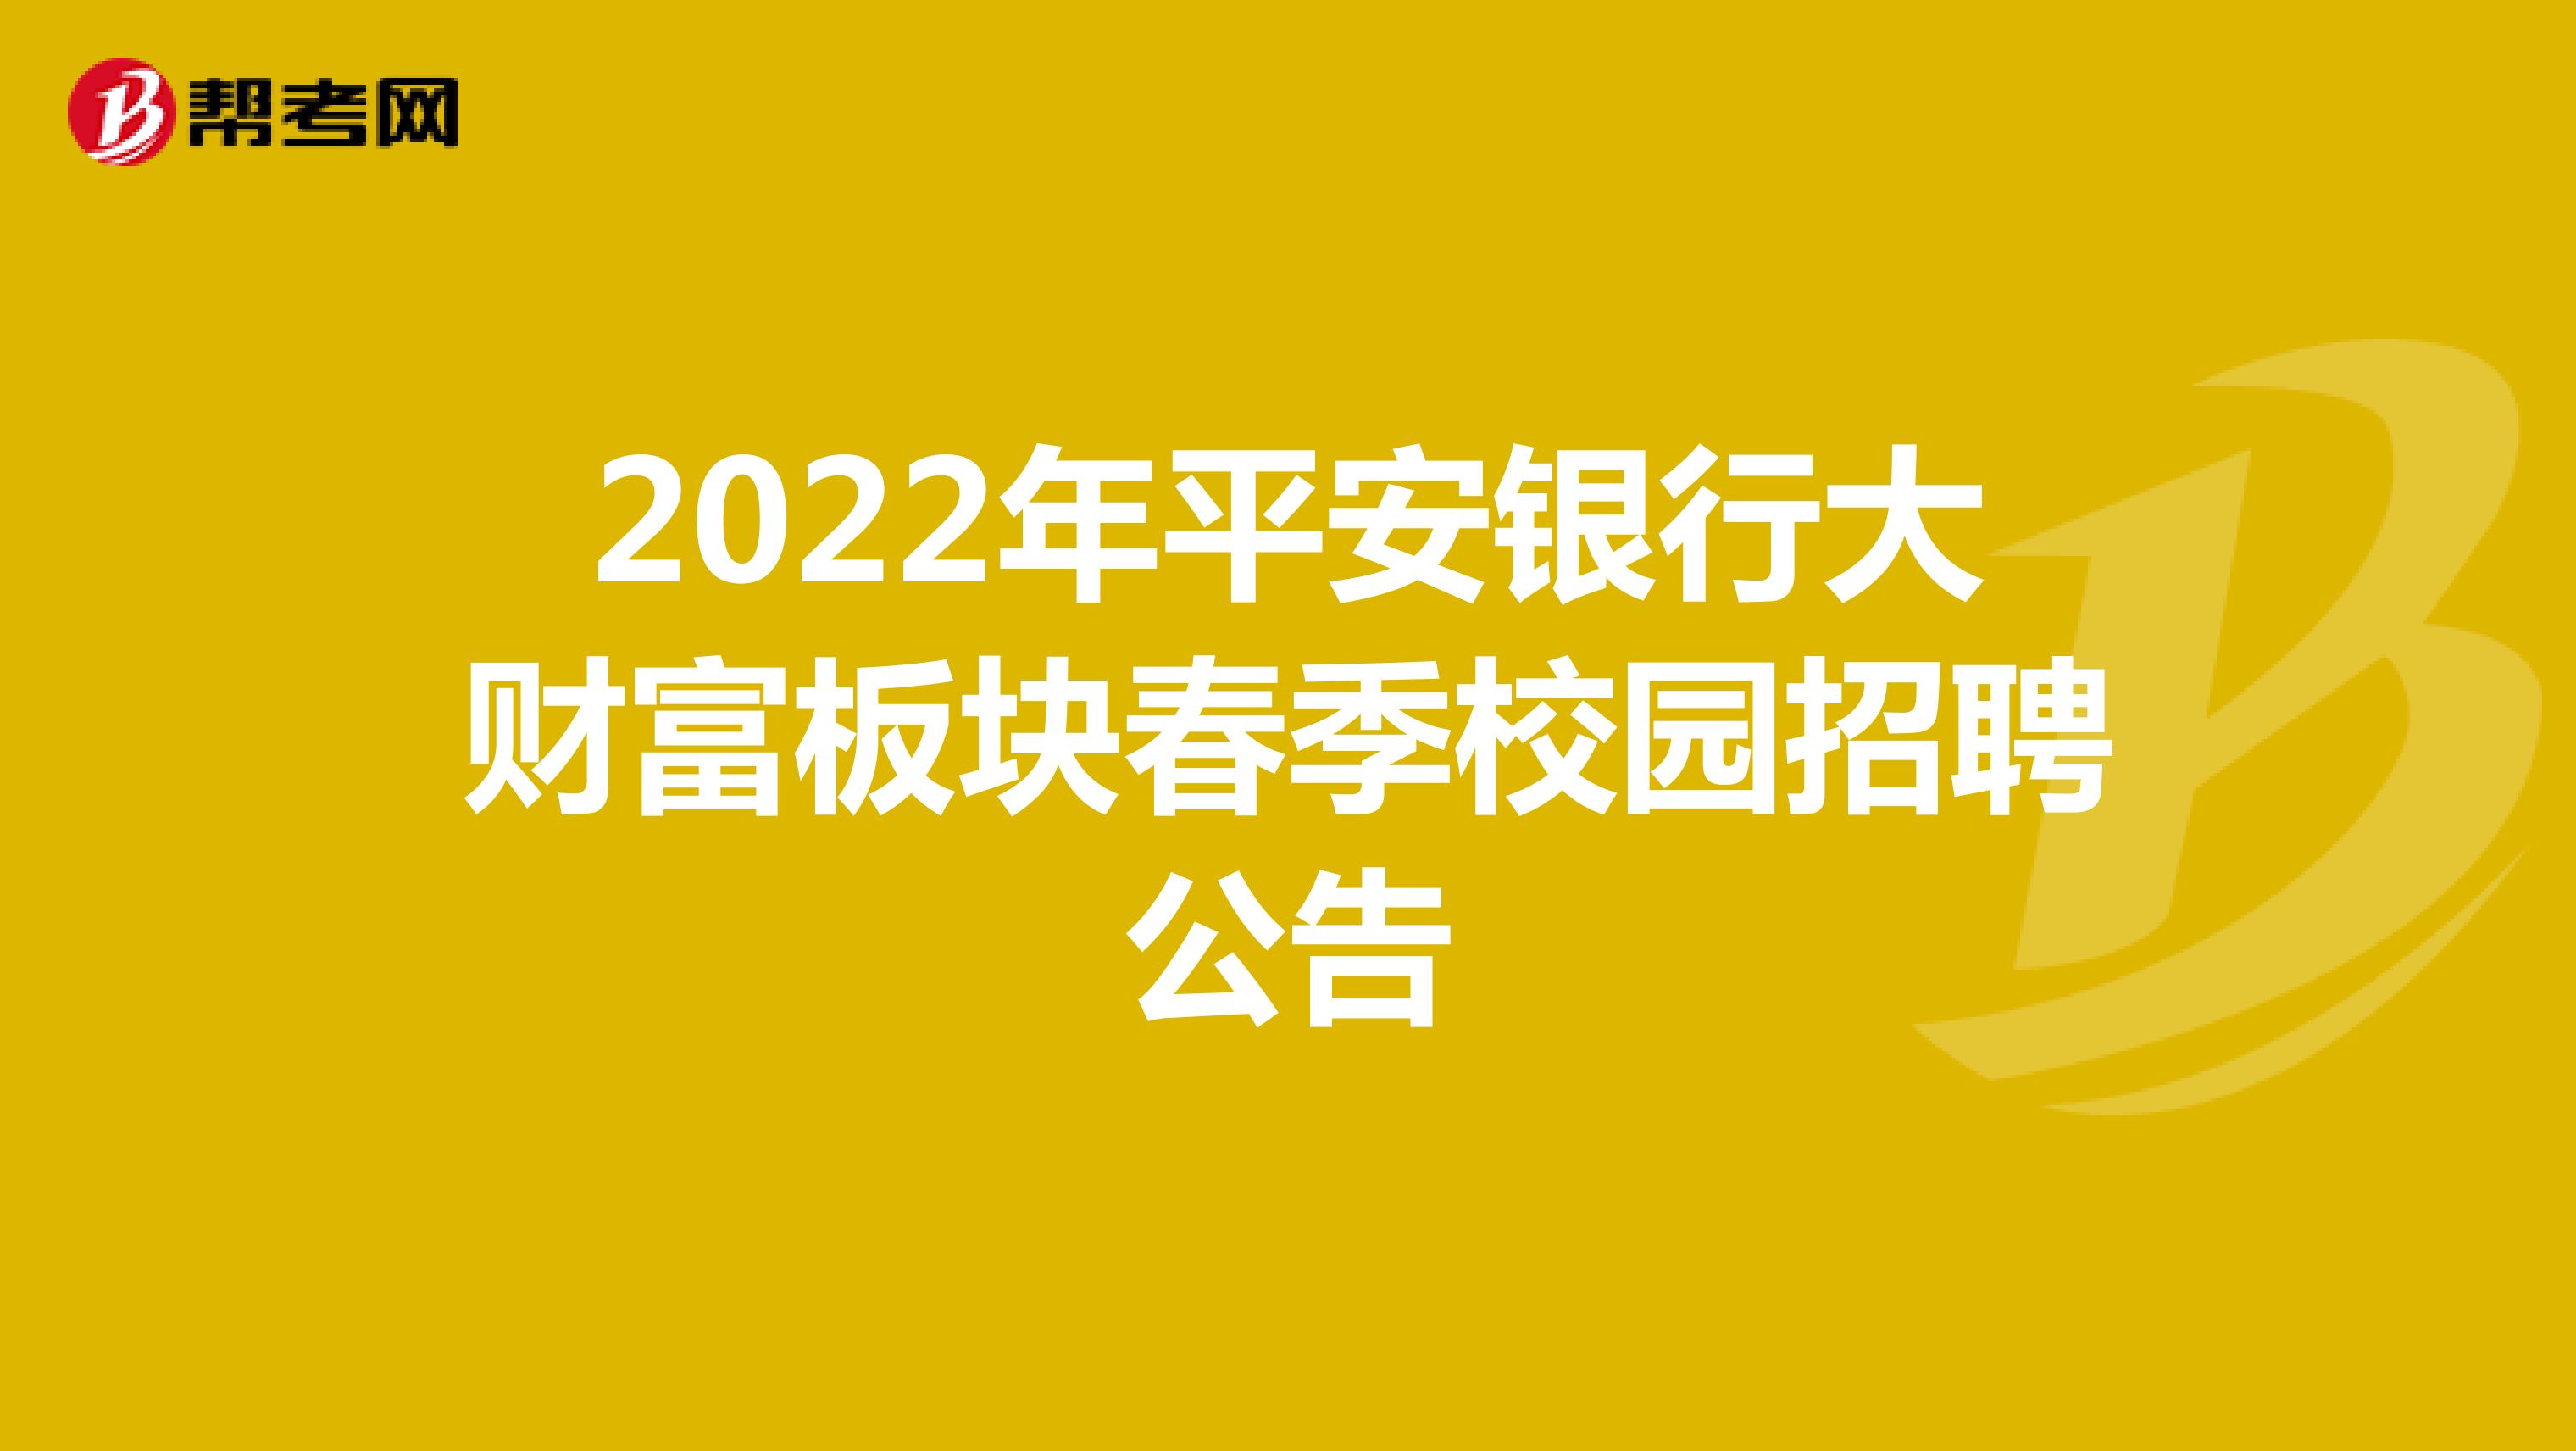 2022年平安银行大财富板块春季校园招聘公告